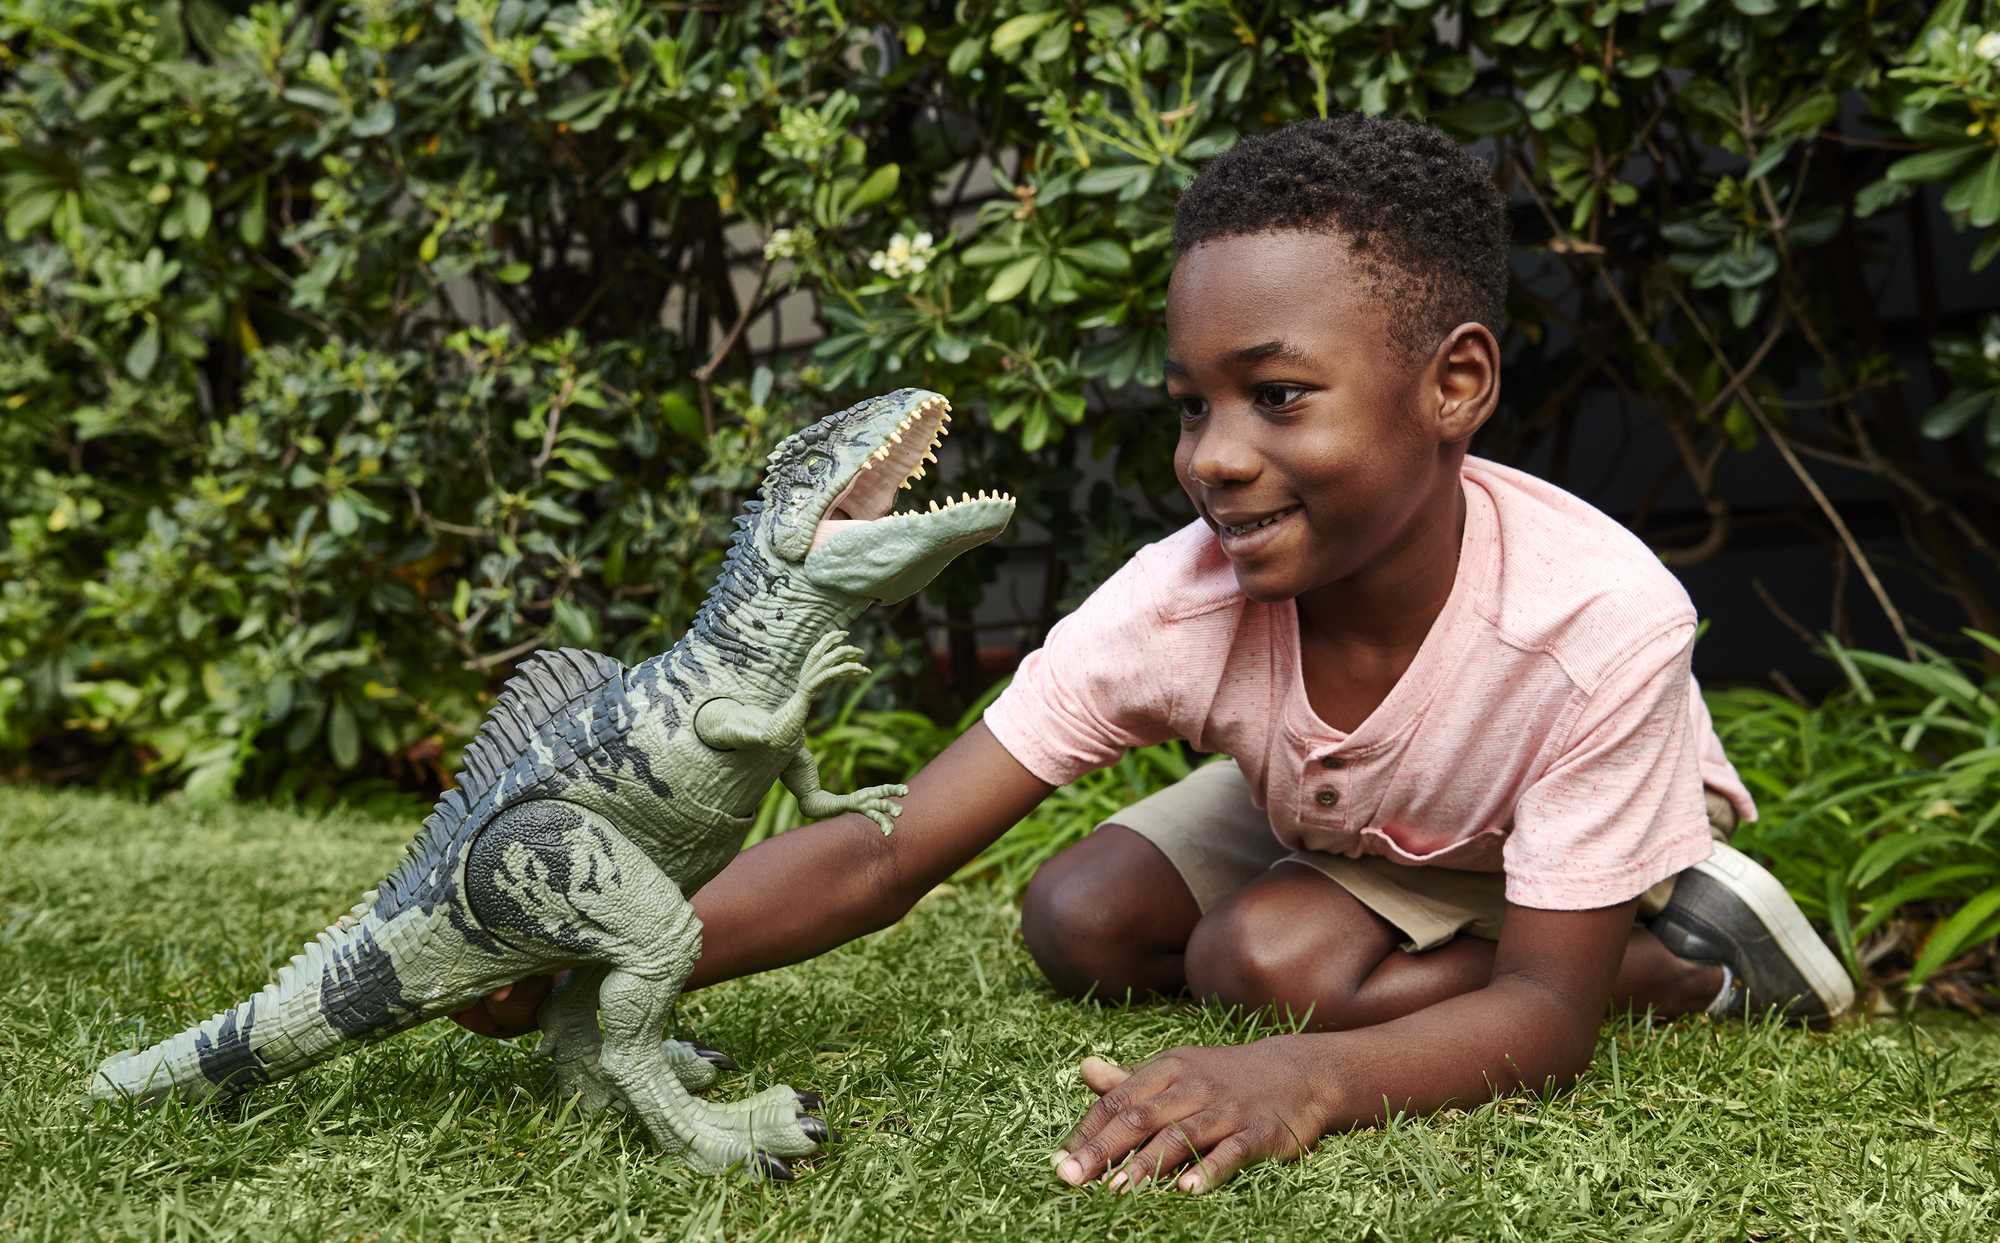 3 ans enfant dinosaure saurien anniversaire présent cadeau d'anniversaire |  Sticker